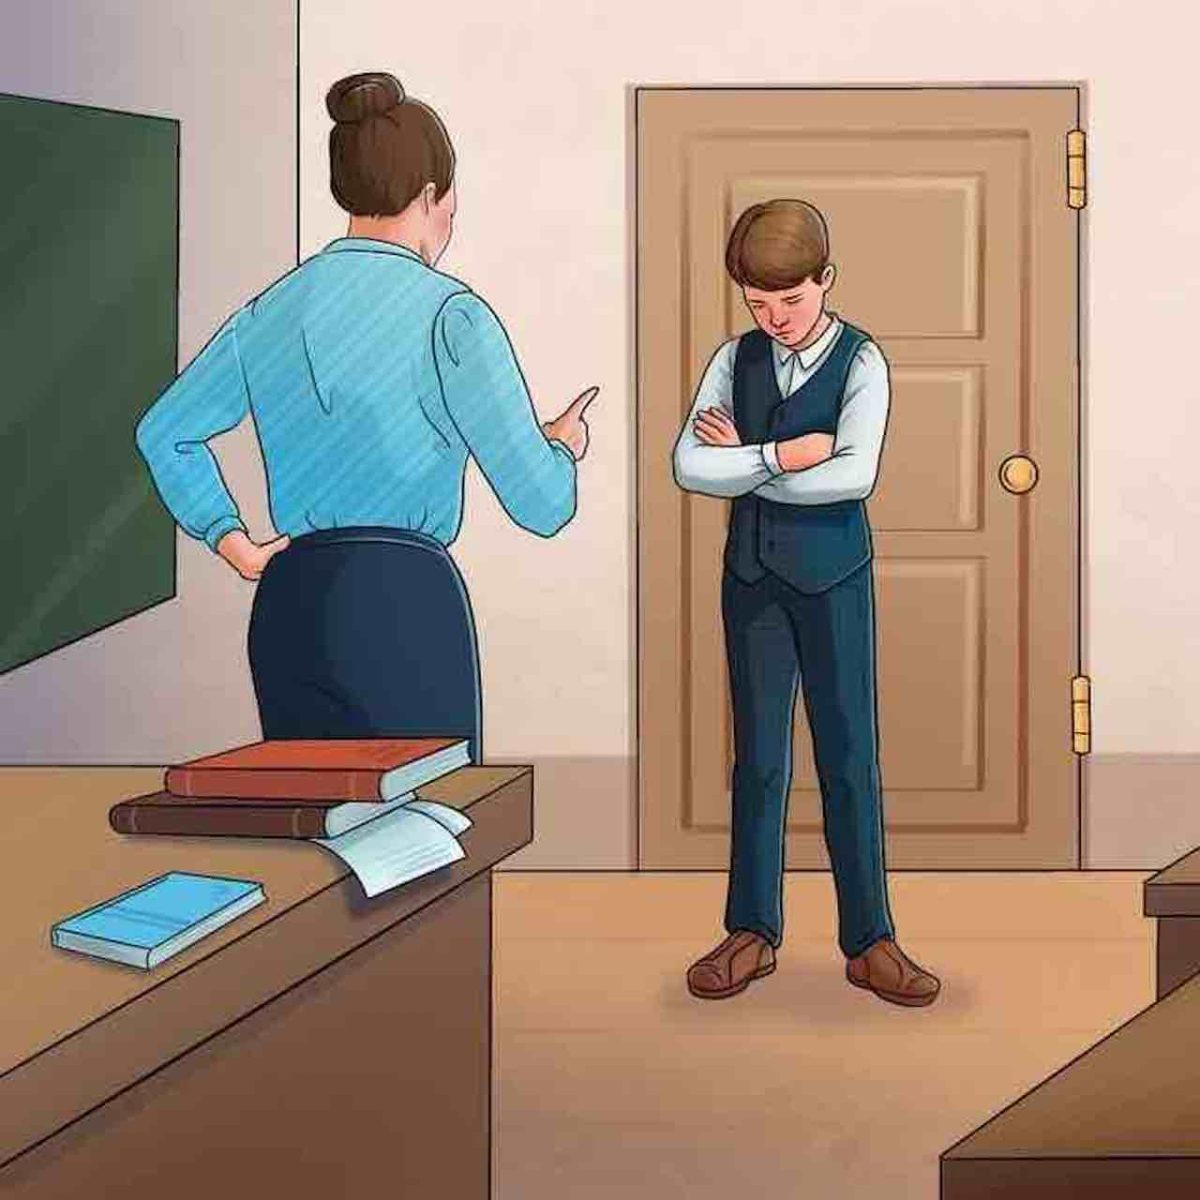 خطای تصویر دانش آموز و معلم